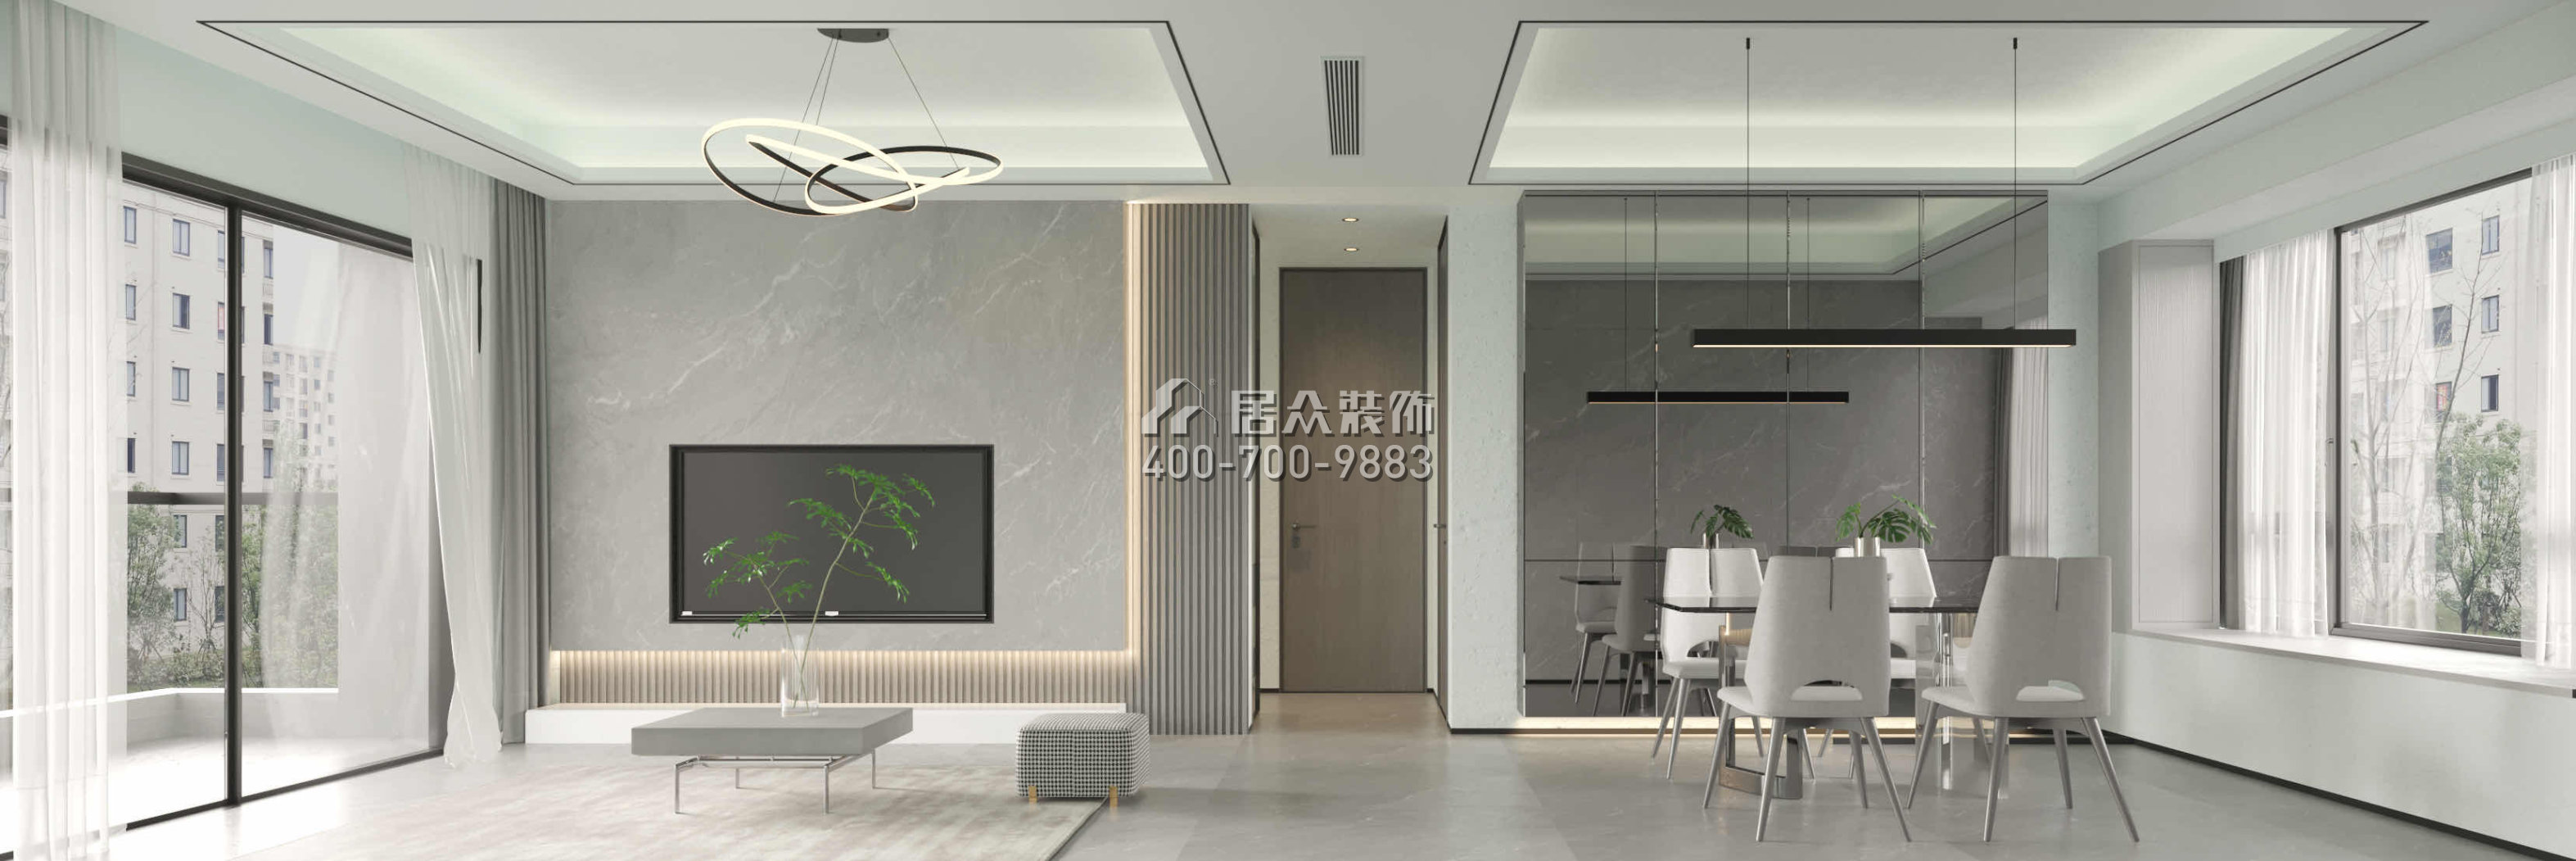 京基·御景峯110平方米現代簡約風格平層戶型客廳裝修效果圖